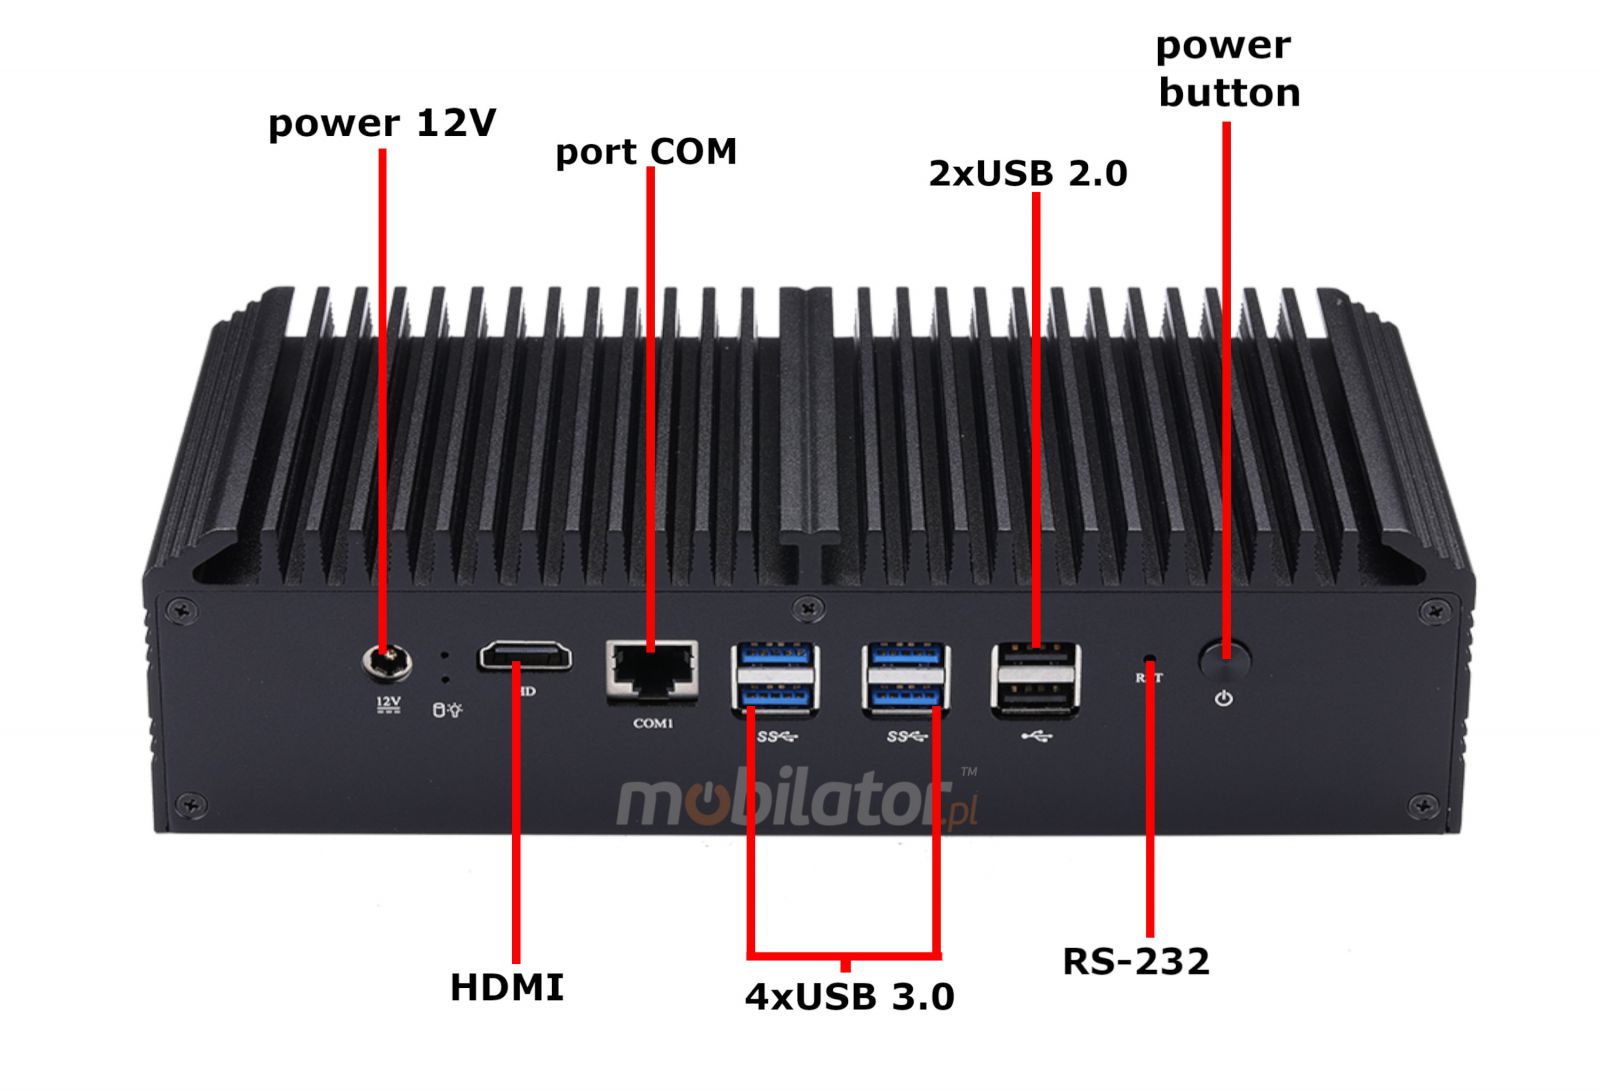 Power supply 12V, 4x USB 3. 0 inputs, MiniPC front, 2x USB 2. 0